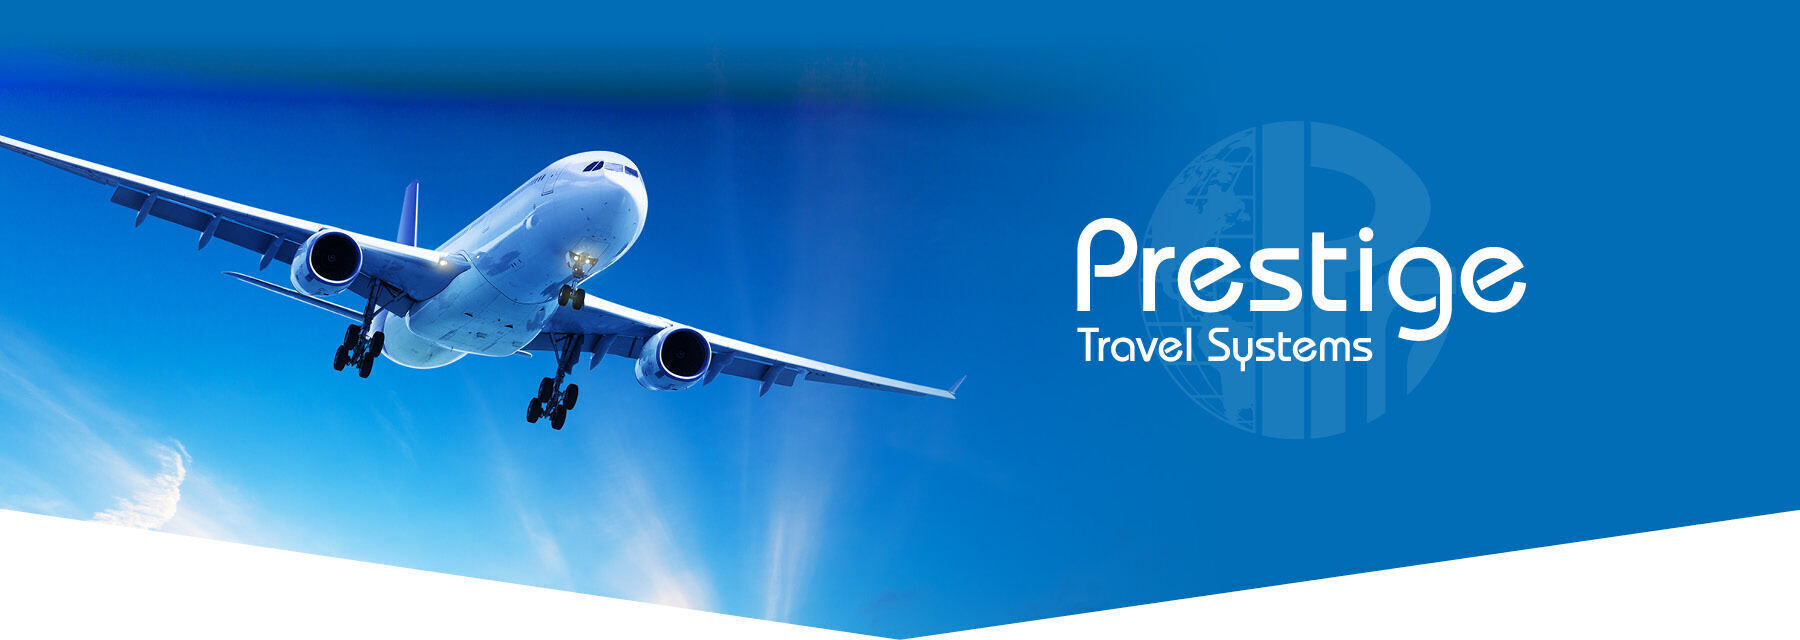 prestige travel services header